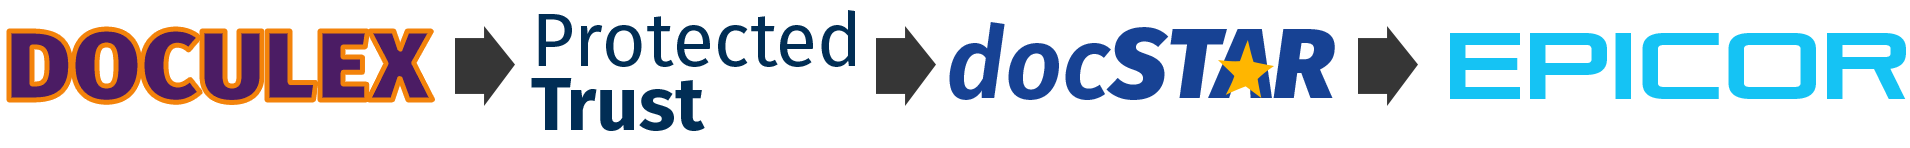 logos-of-doculex-acquision